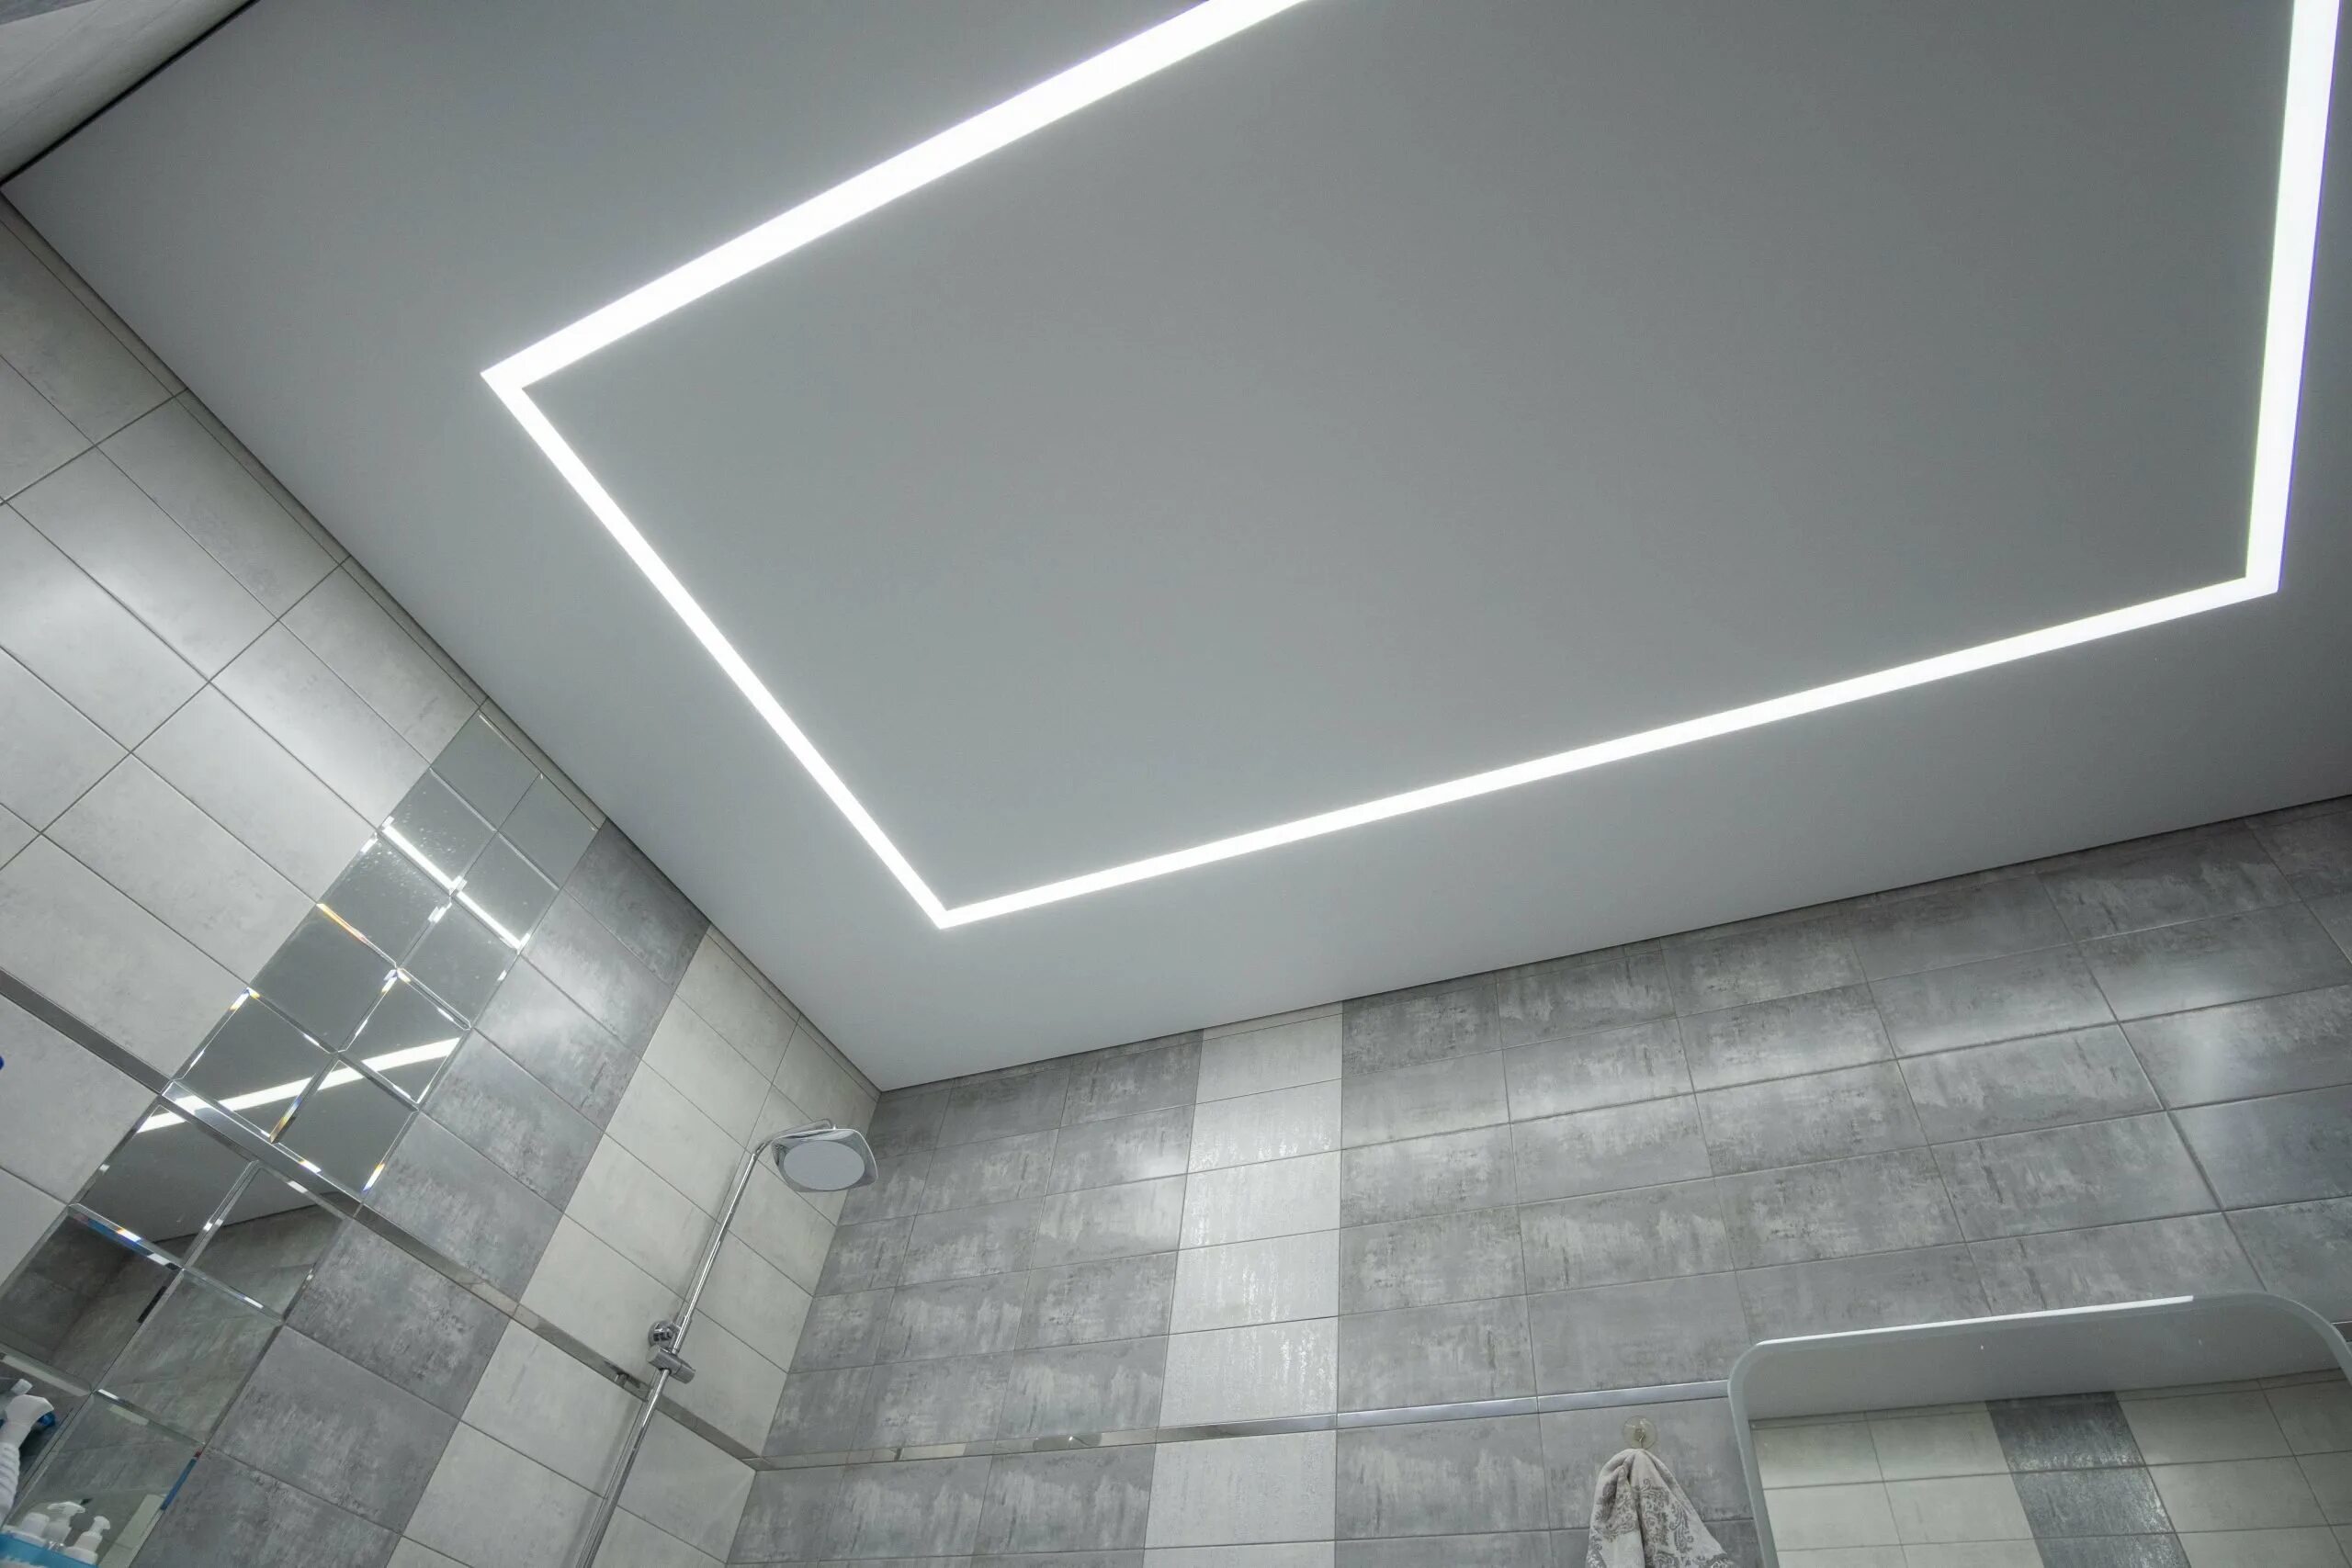 Белый потолок в ванной. Парящий потолок в ванной. Световые линии на потолке в ванной. Натяжной потолок в серую ванну. Потолок в ванную со световыми линиями.